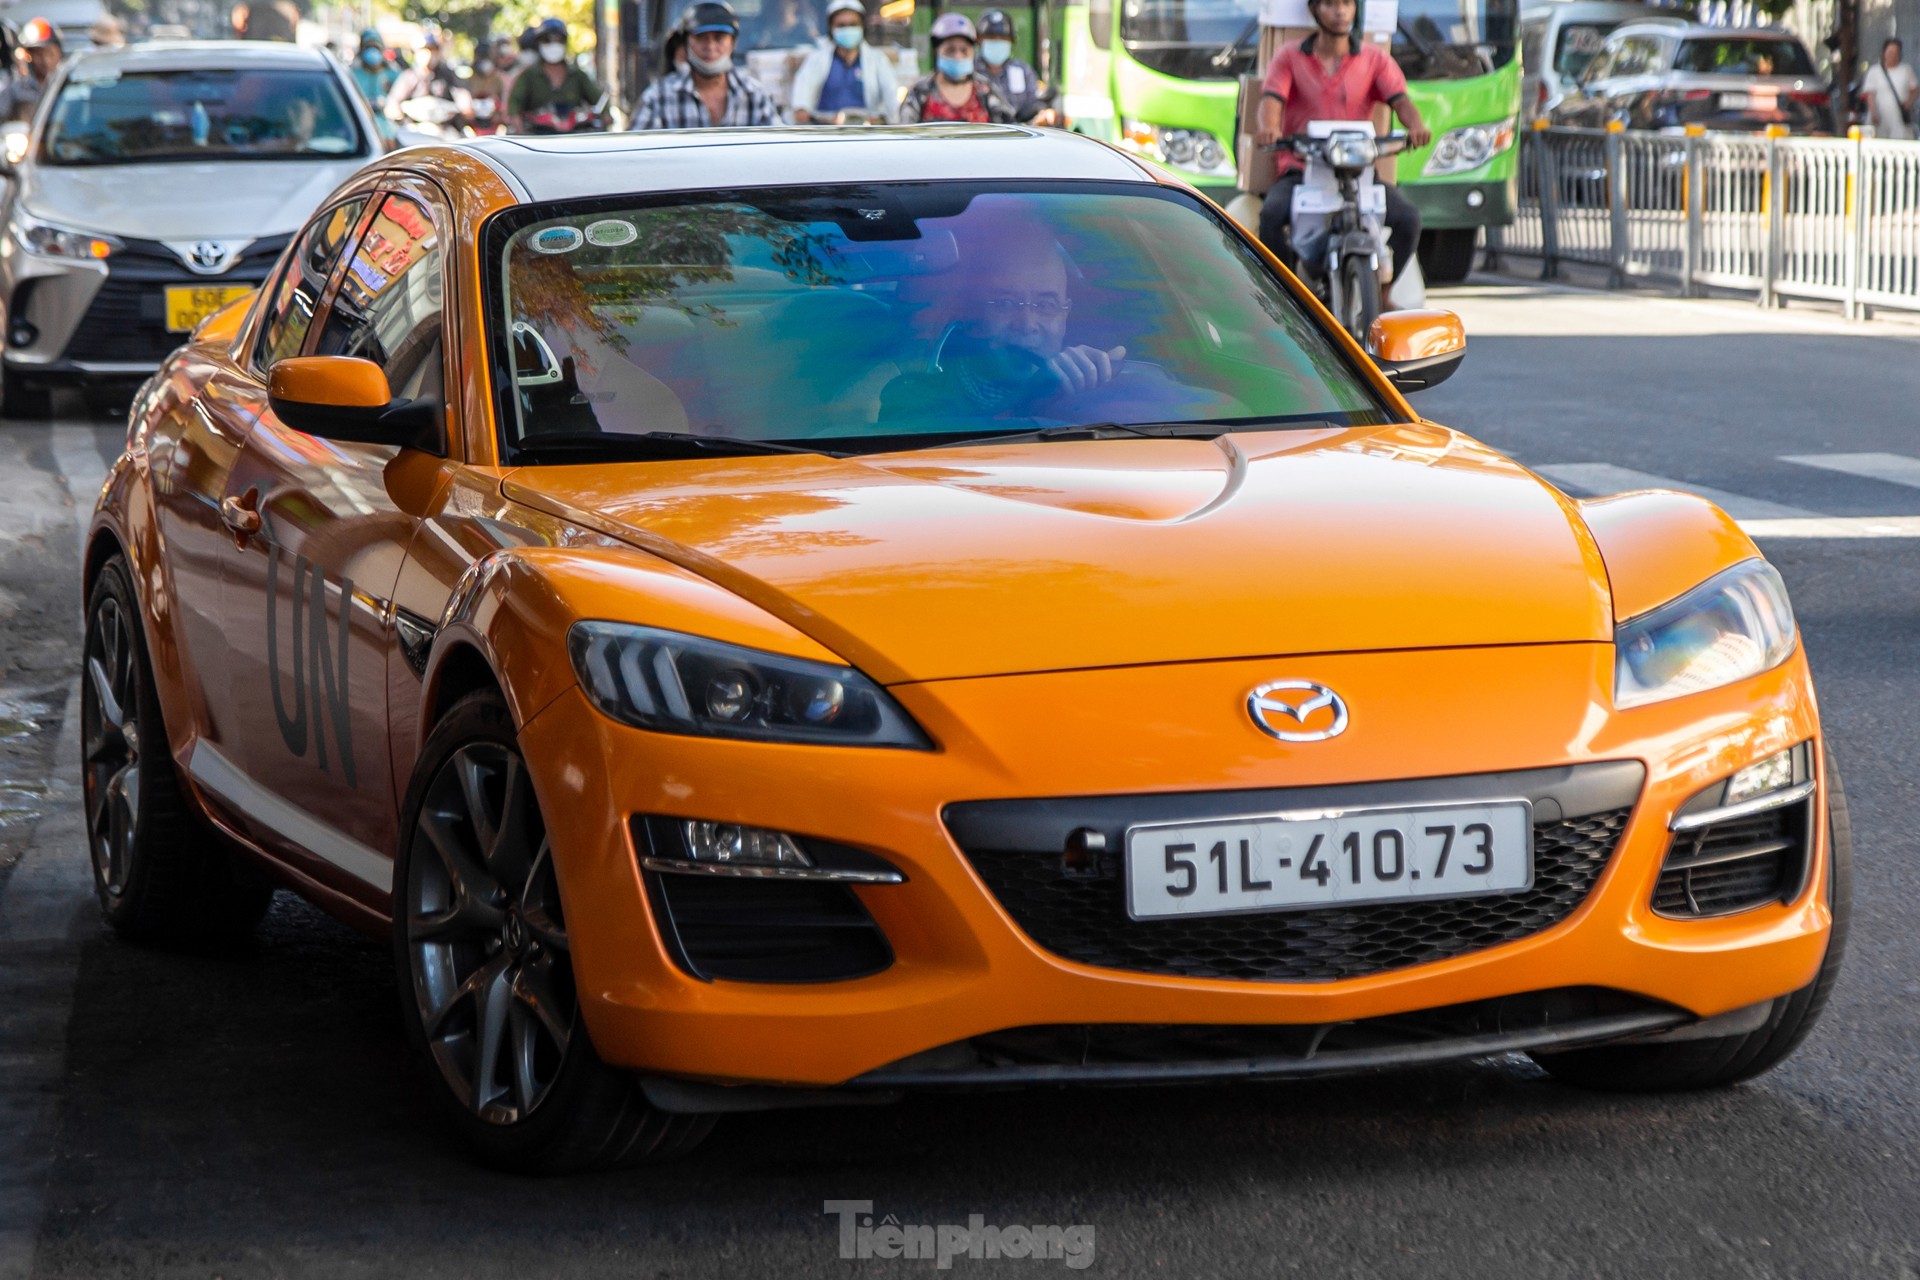 Mazda RX-8 hàng hiếm xuất hiện trên đường phố Sài Gòn